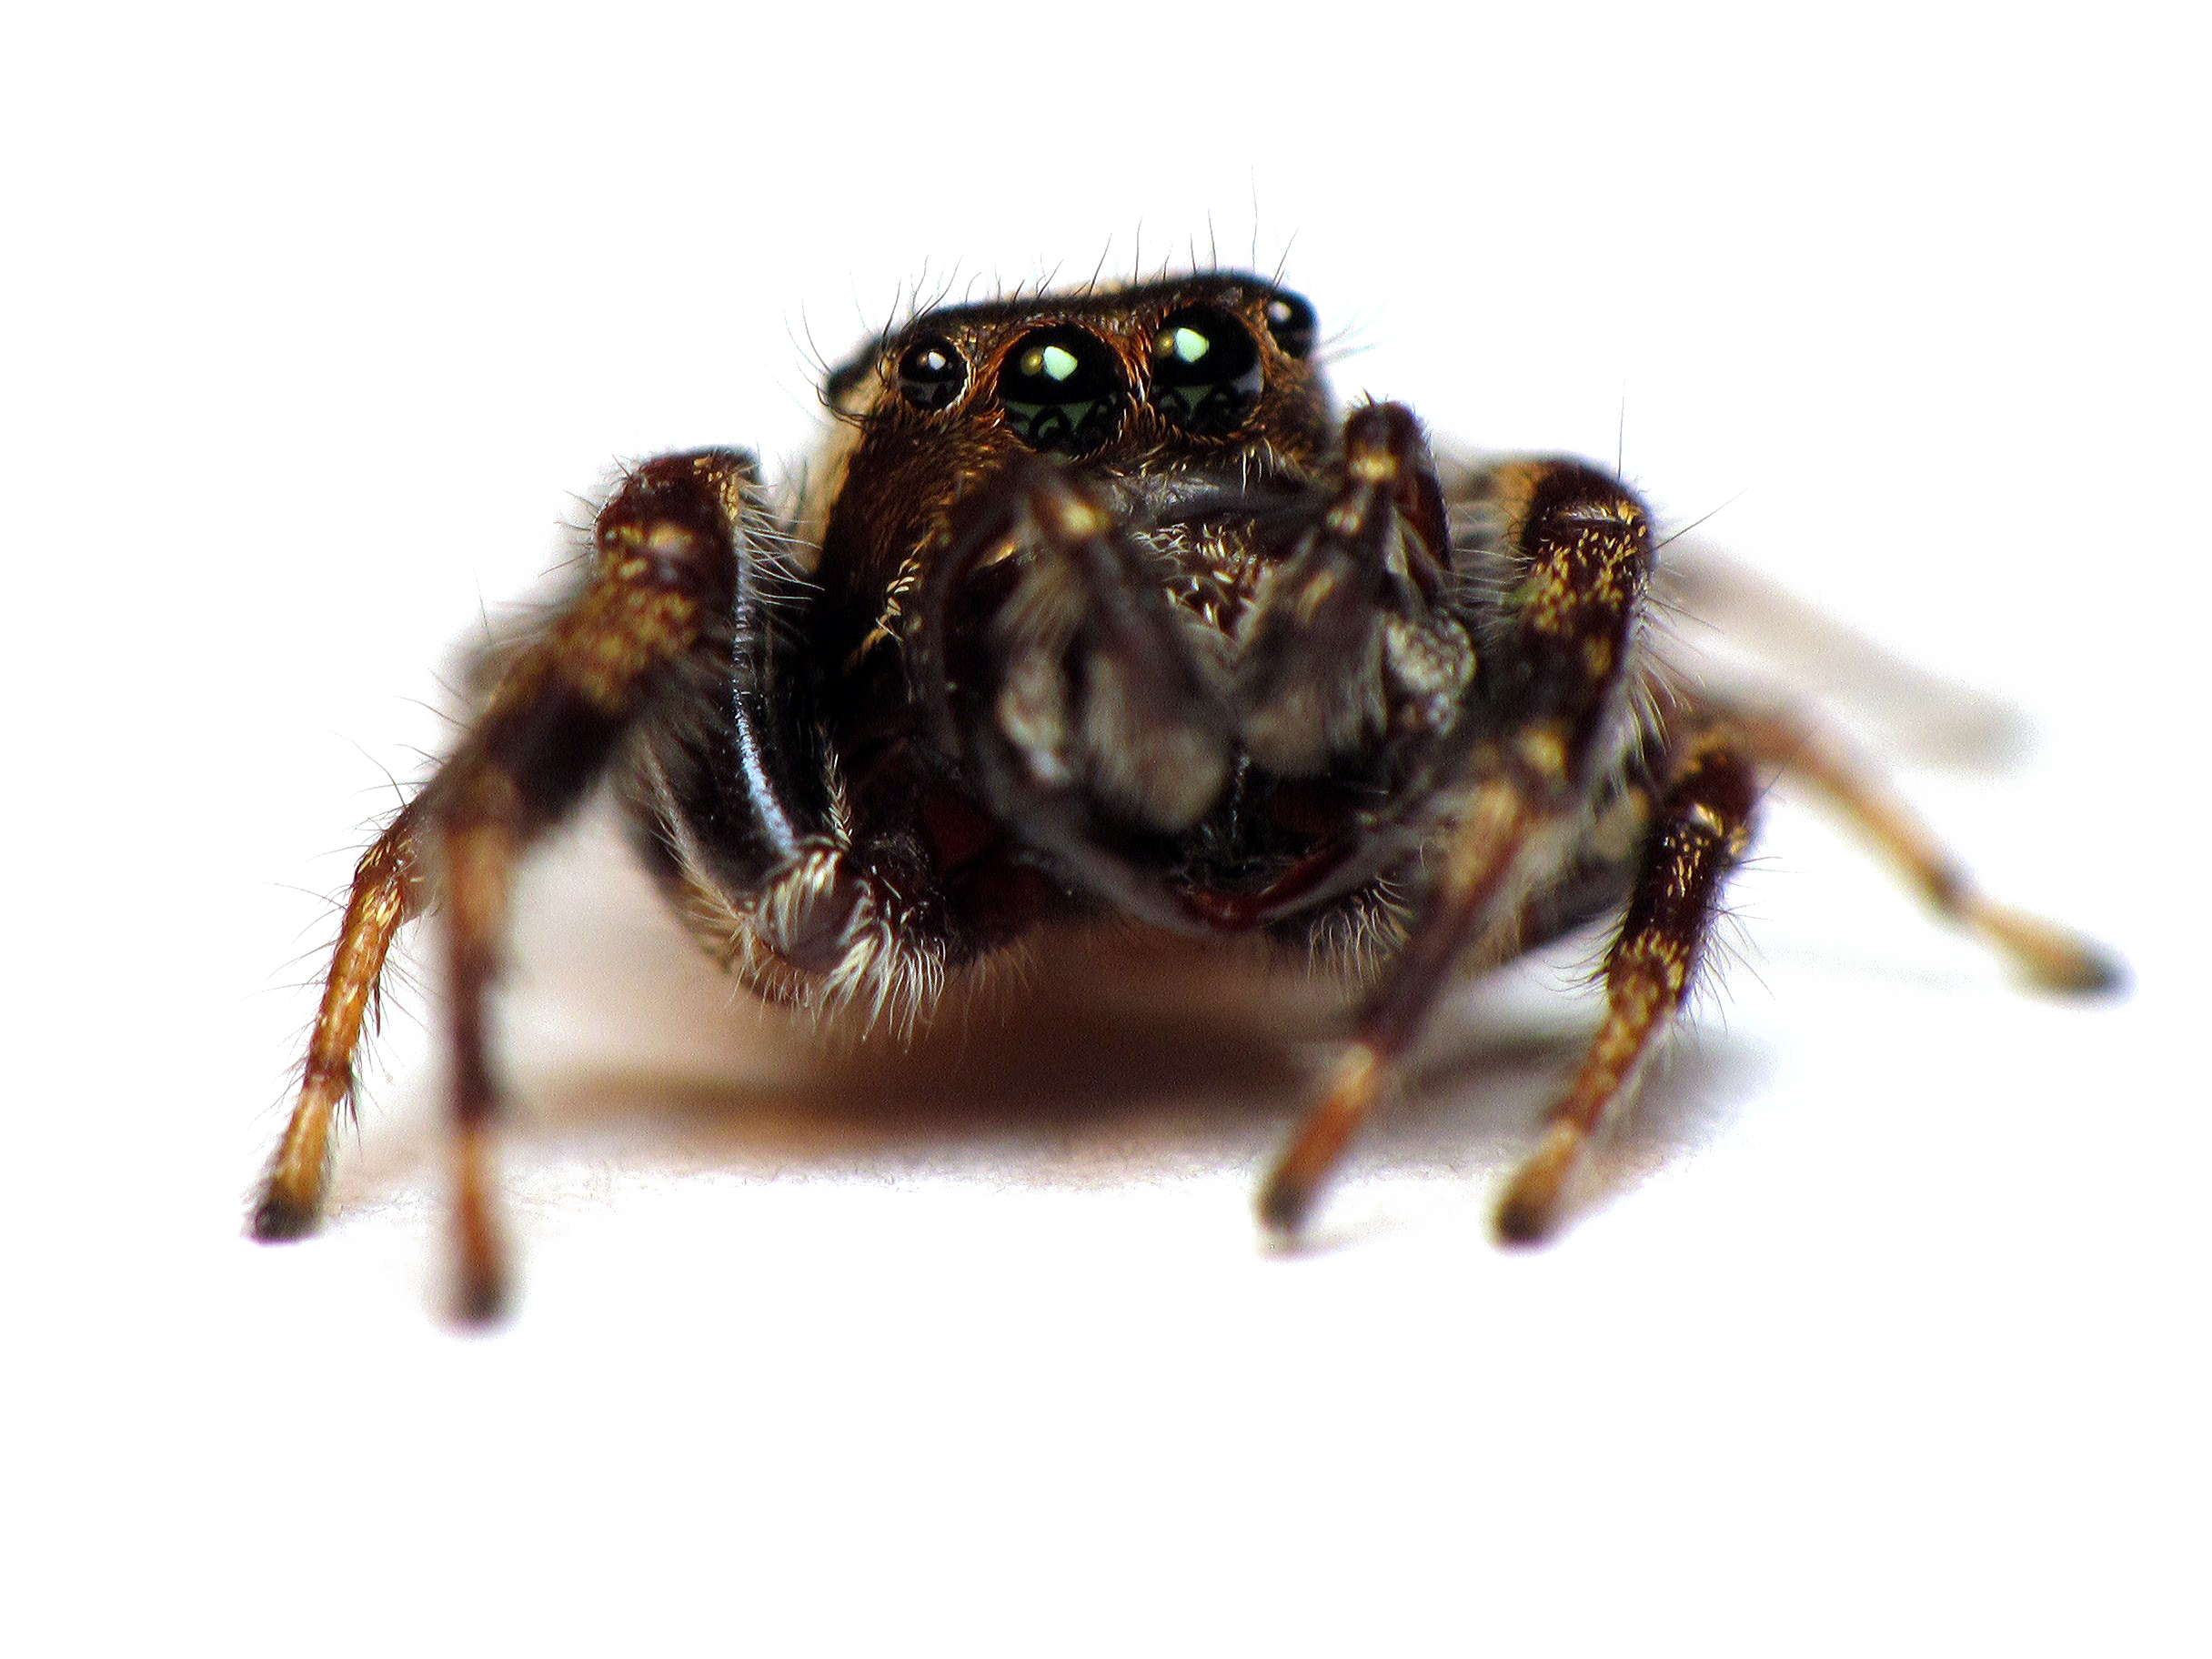 Immagine Trasparente del ragno di salto